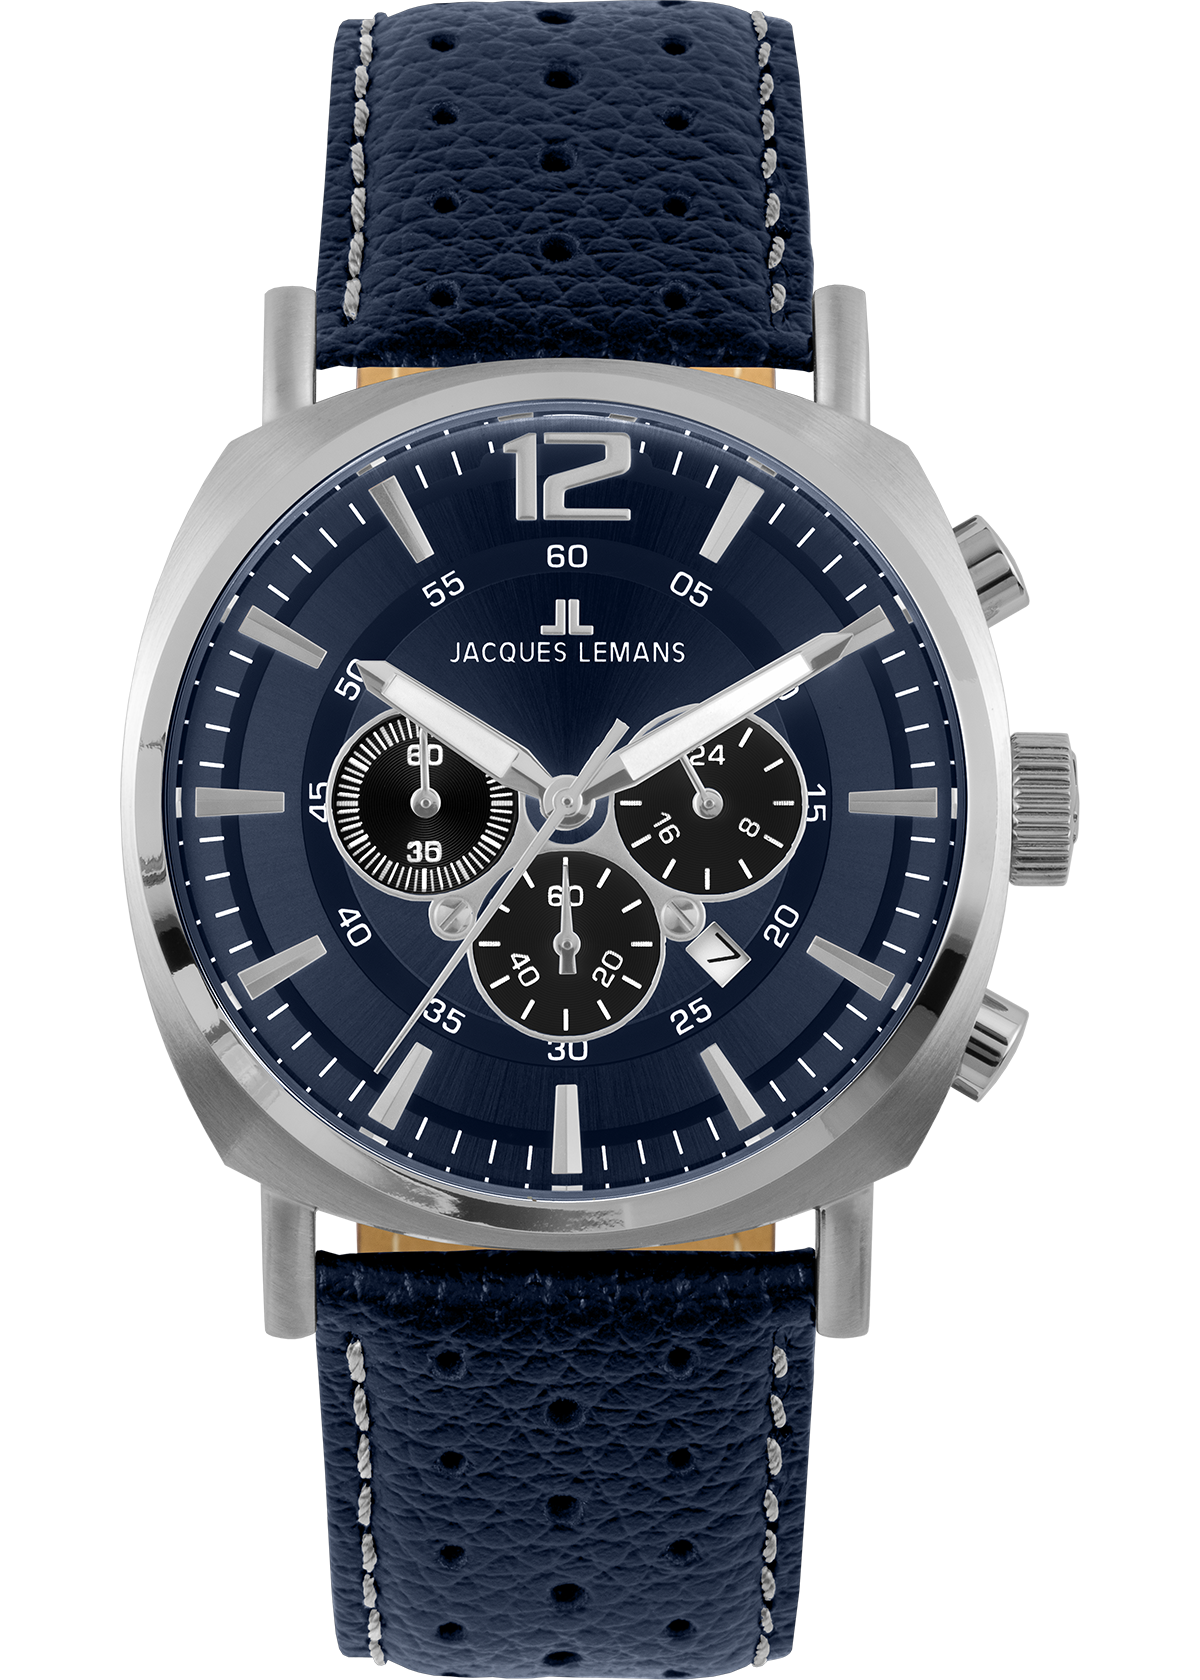 Jacques Lemans Watches & Jewellery | Jacques Lemans®